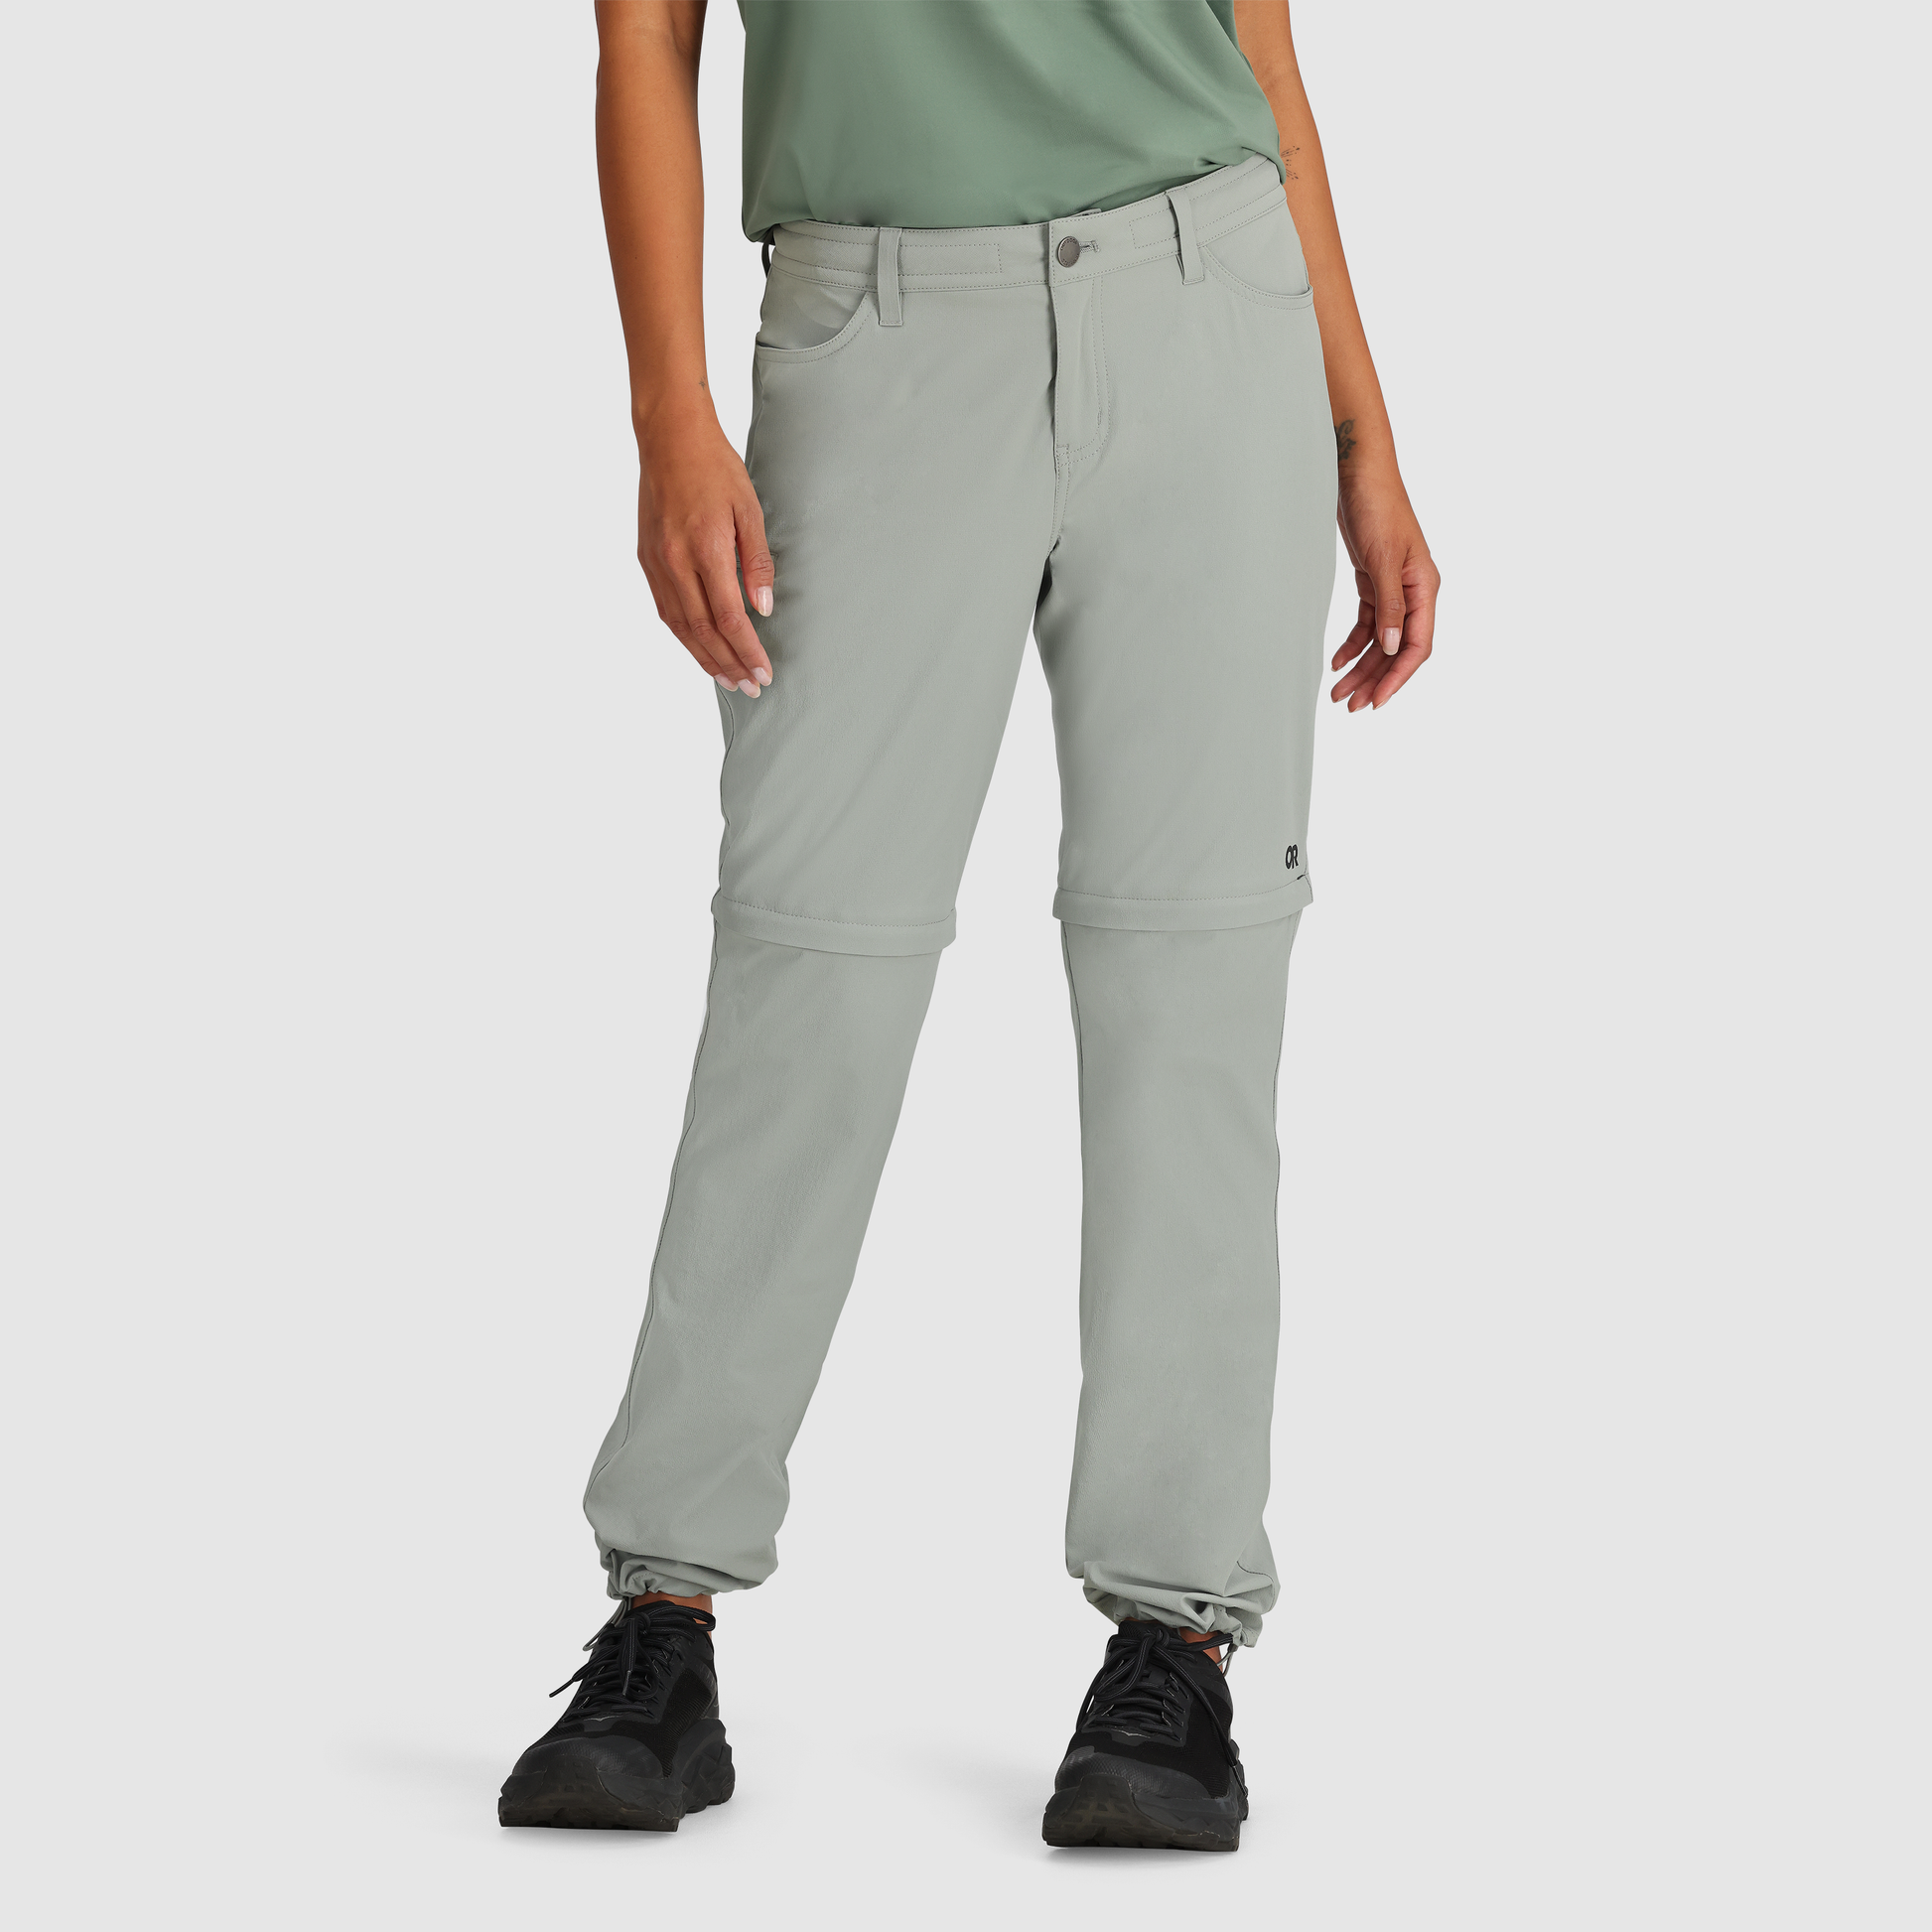 Shop Outdoor Clothing  Jackets, Convertible Pants, Shorts